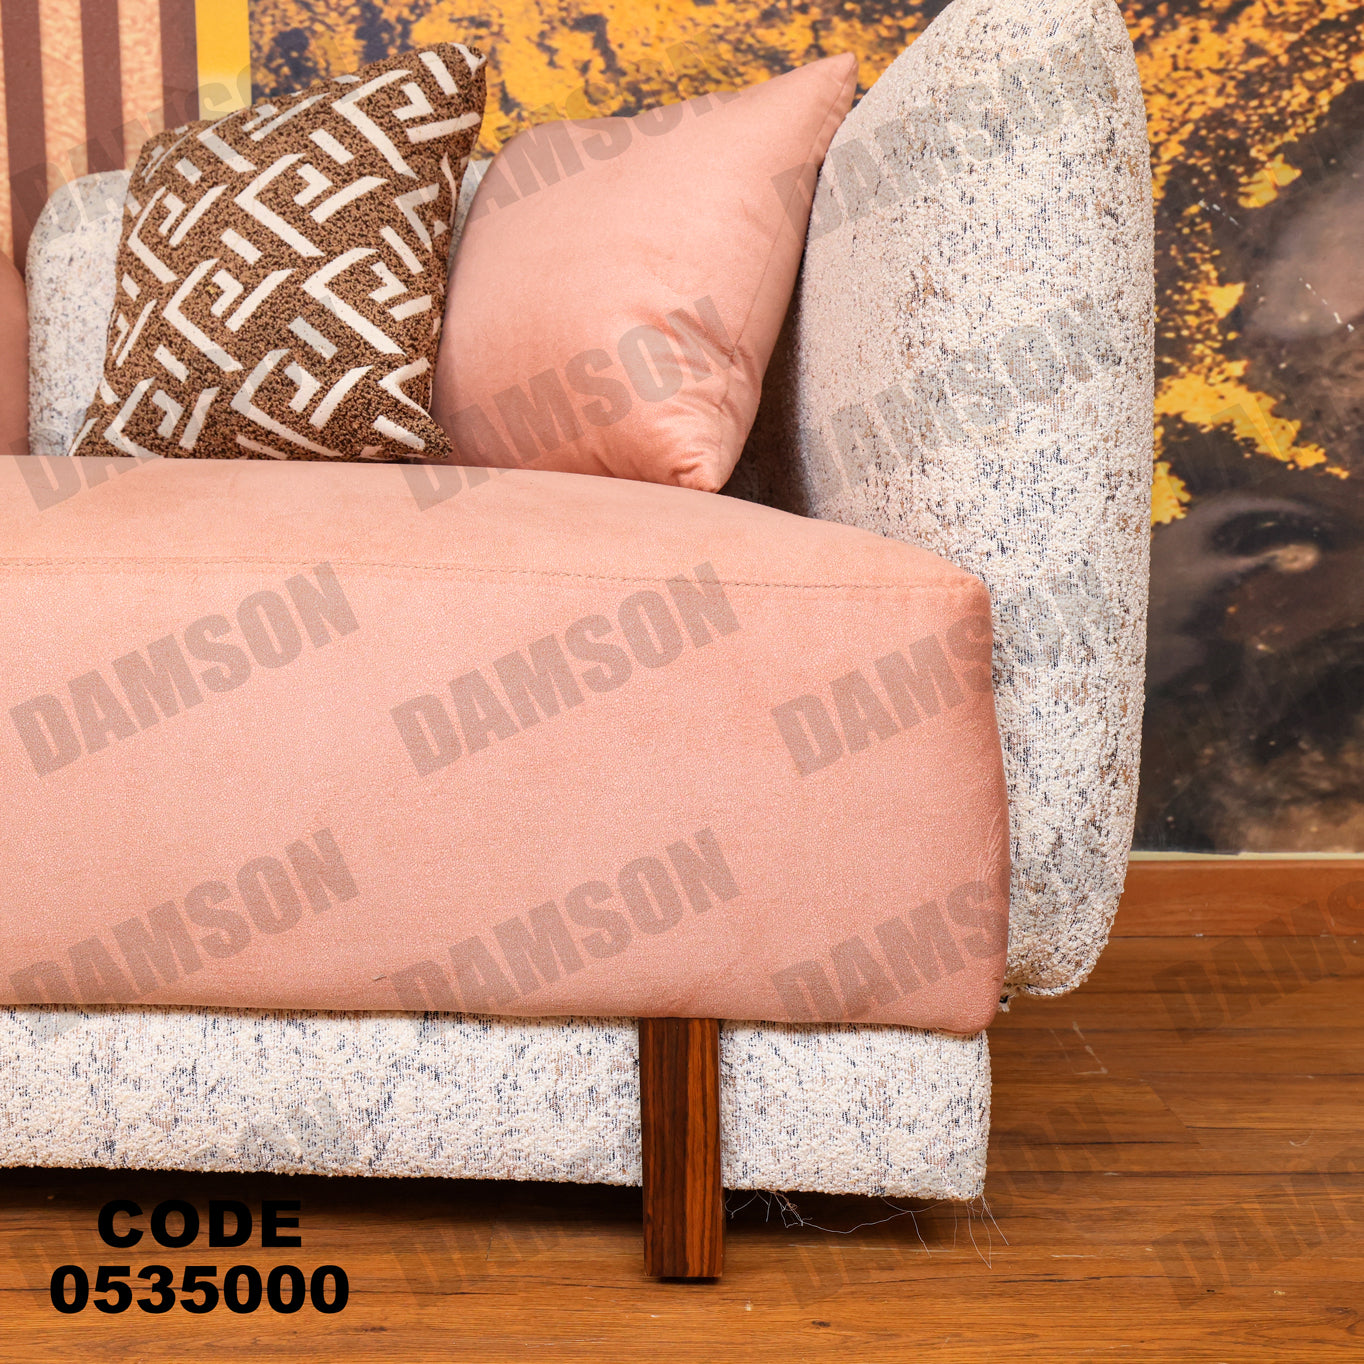 انترية 350 - Damson Furnitureانترية 350